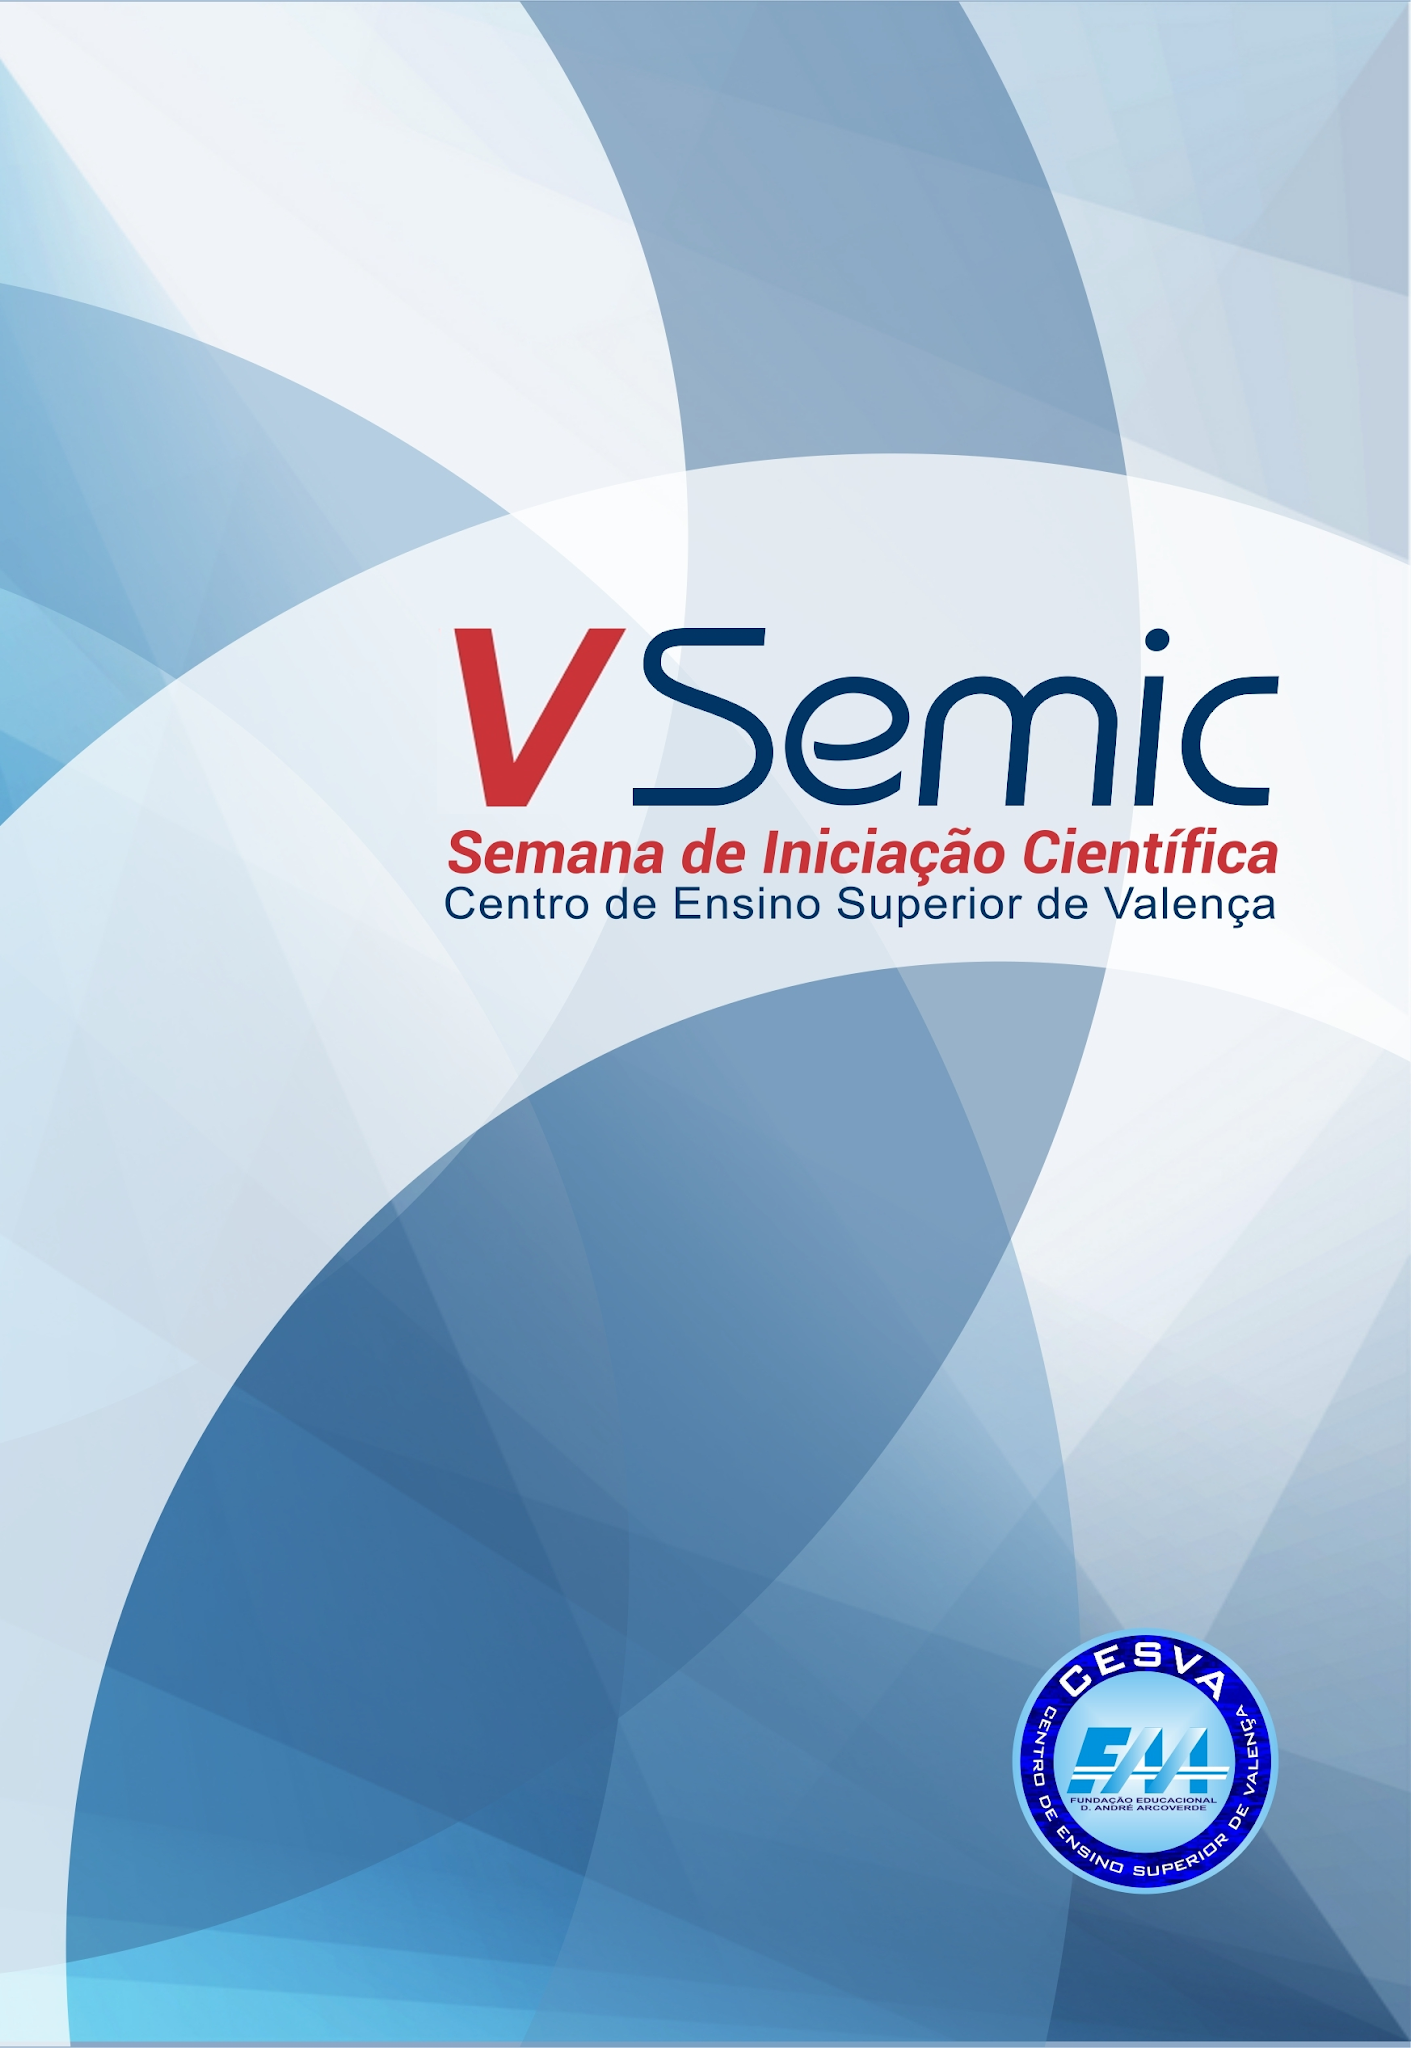 					Visualizar 2017: V SEMIC - Semana de Iniciação Científica
				